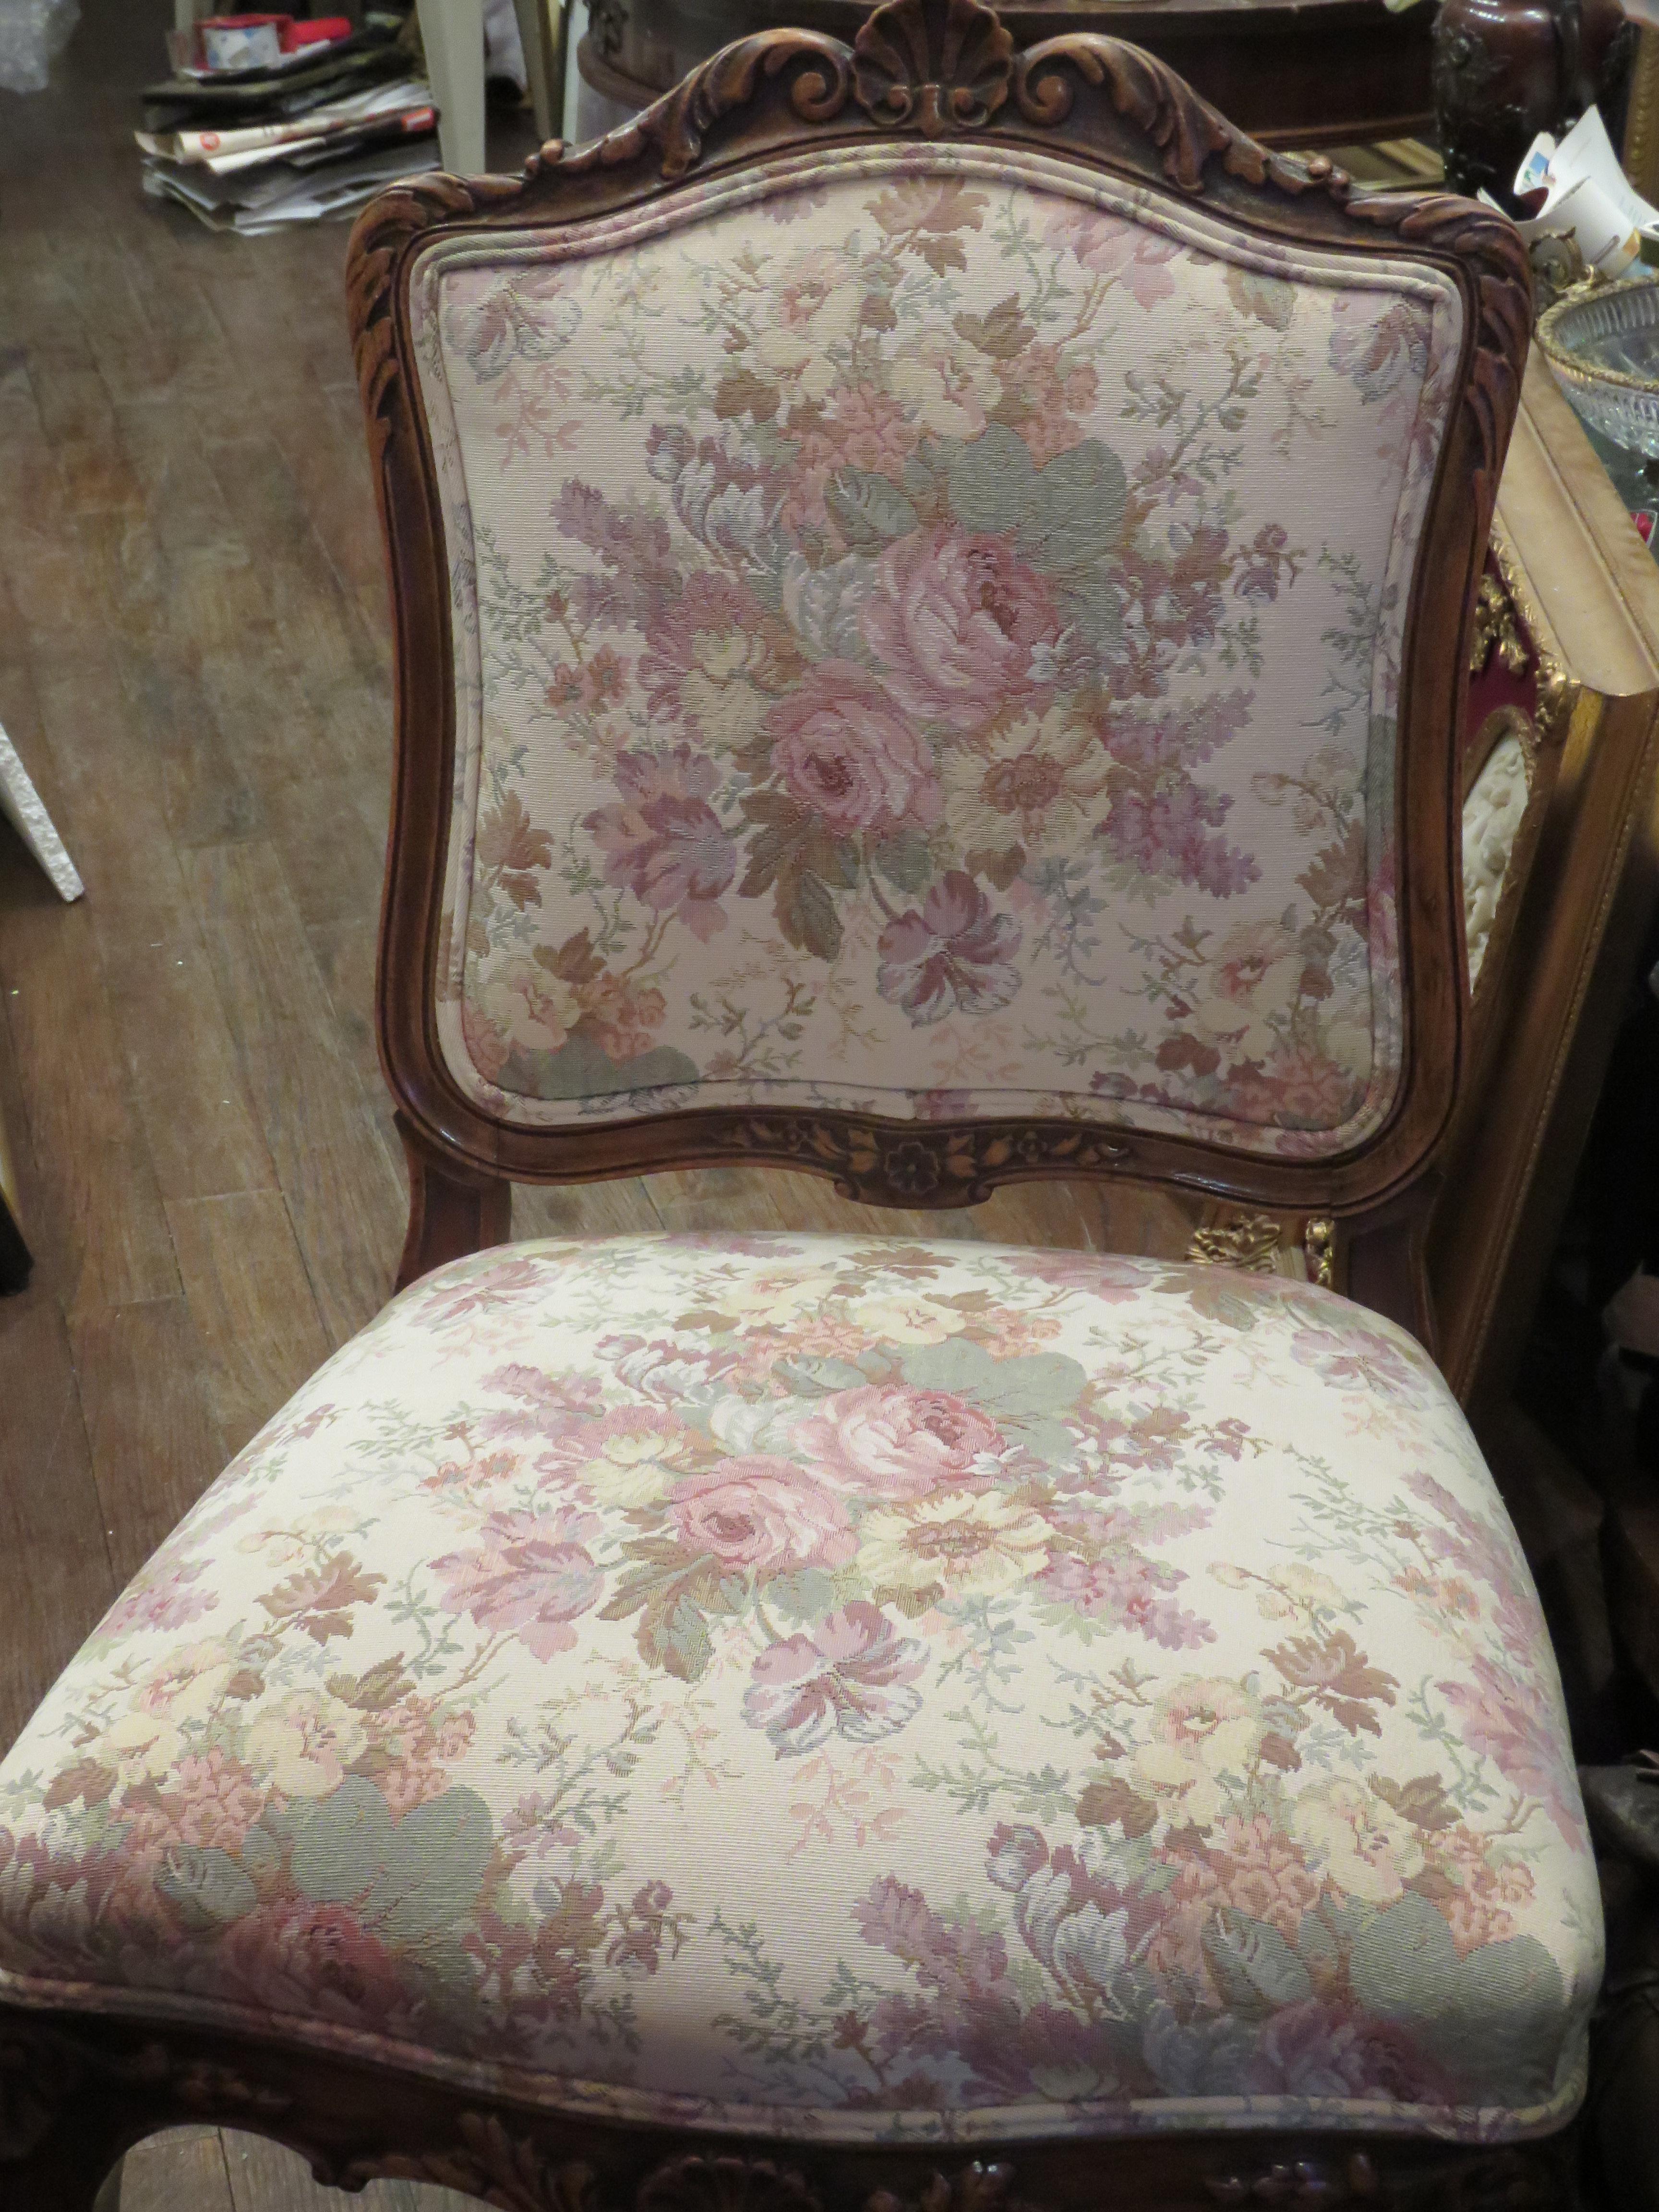 L'article suivant est une rare paire de chaises victoriennes antiques. Les deux chaises sont surmontées d'un cimier à volutes et reposent sur des pieds de chaise à motifs sculptés. Elles sont magnifiquement recouvertes d'une tapisserie d'ameublement